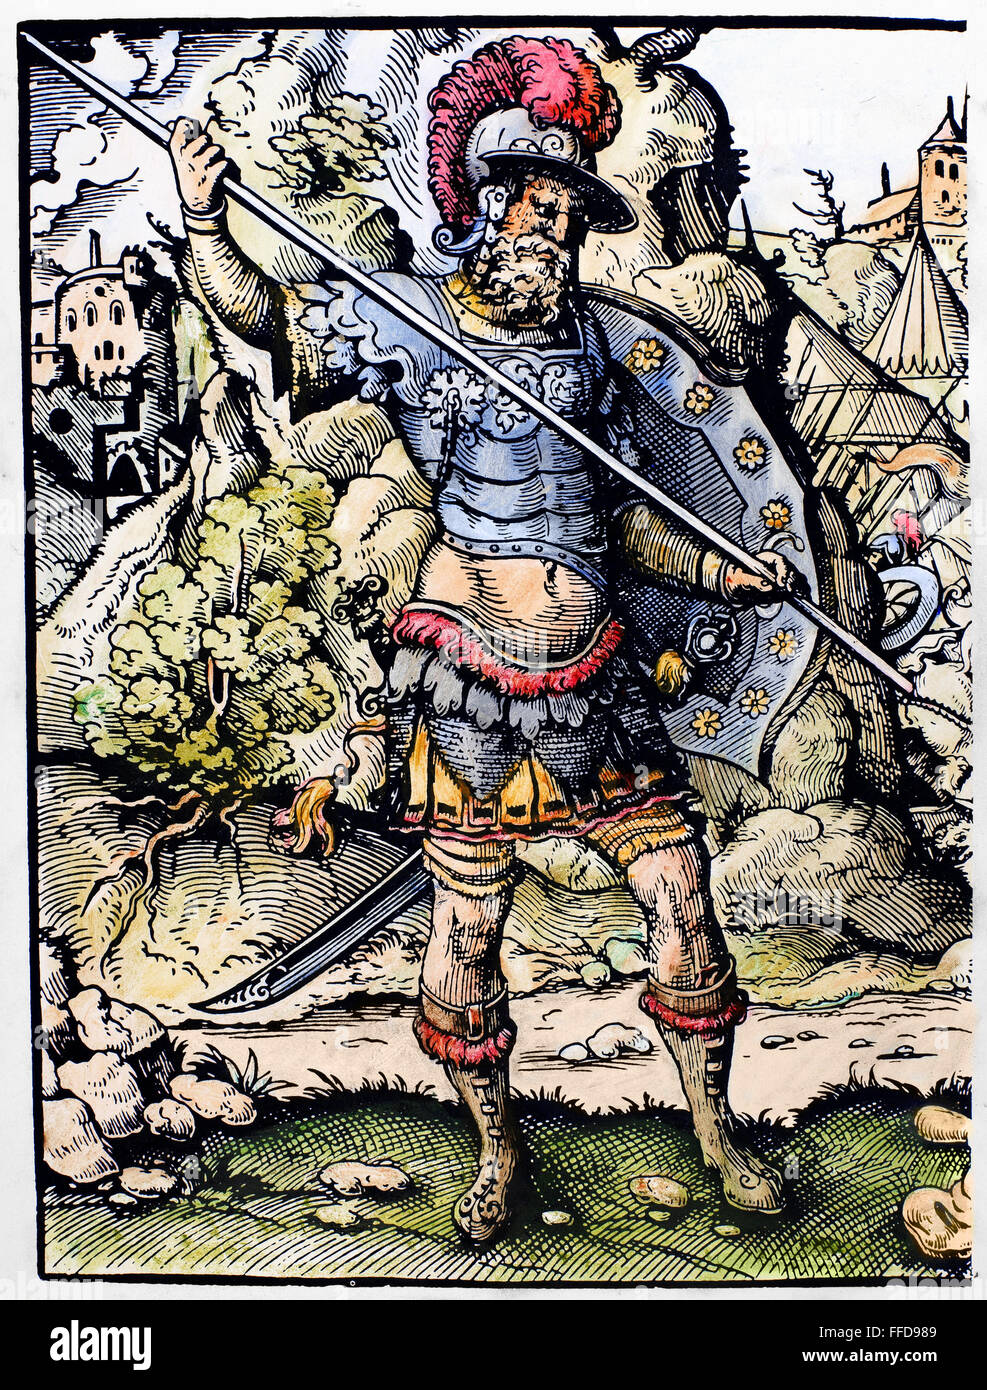 Davide e Golia. /NGoliath, il guerriero Filisteo, si prepara a fare la battaglia contro David (1 Samuele 17: 42-44). Xilografia, XVI secolo, da Jost Amman. Foto Stock